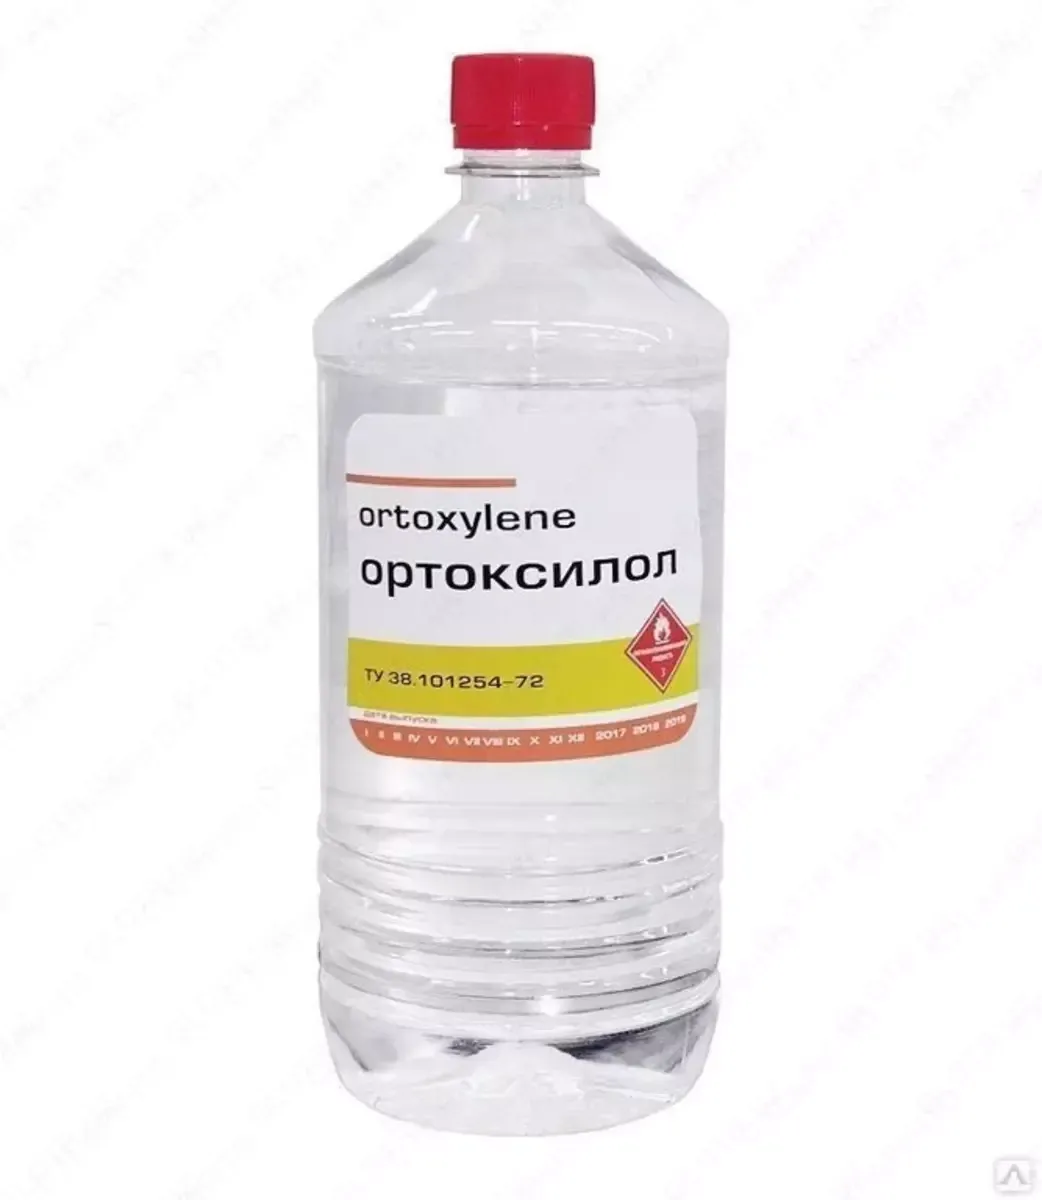 Ортоксилол нефтяной для ЛКМ, бутылка 1 л/0,74 кг#1